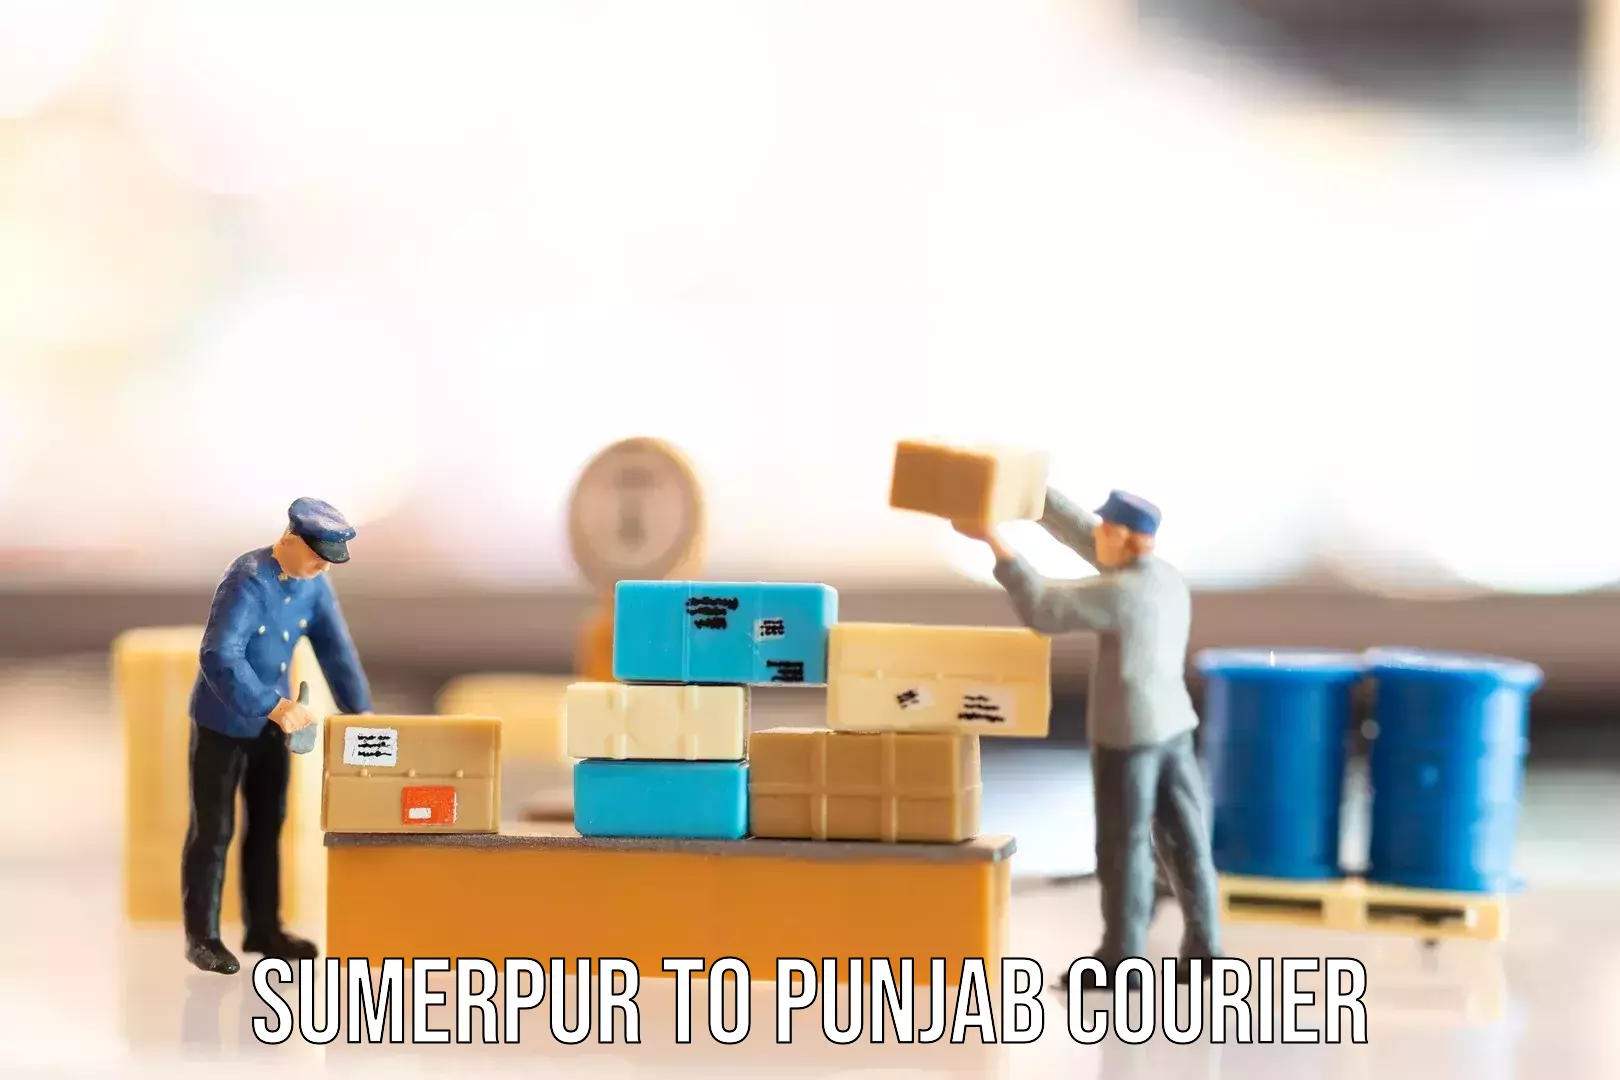 Baggage transport network Sumerpur to Punjab